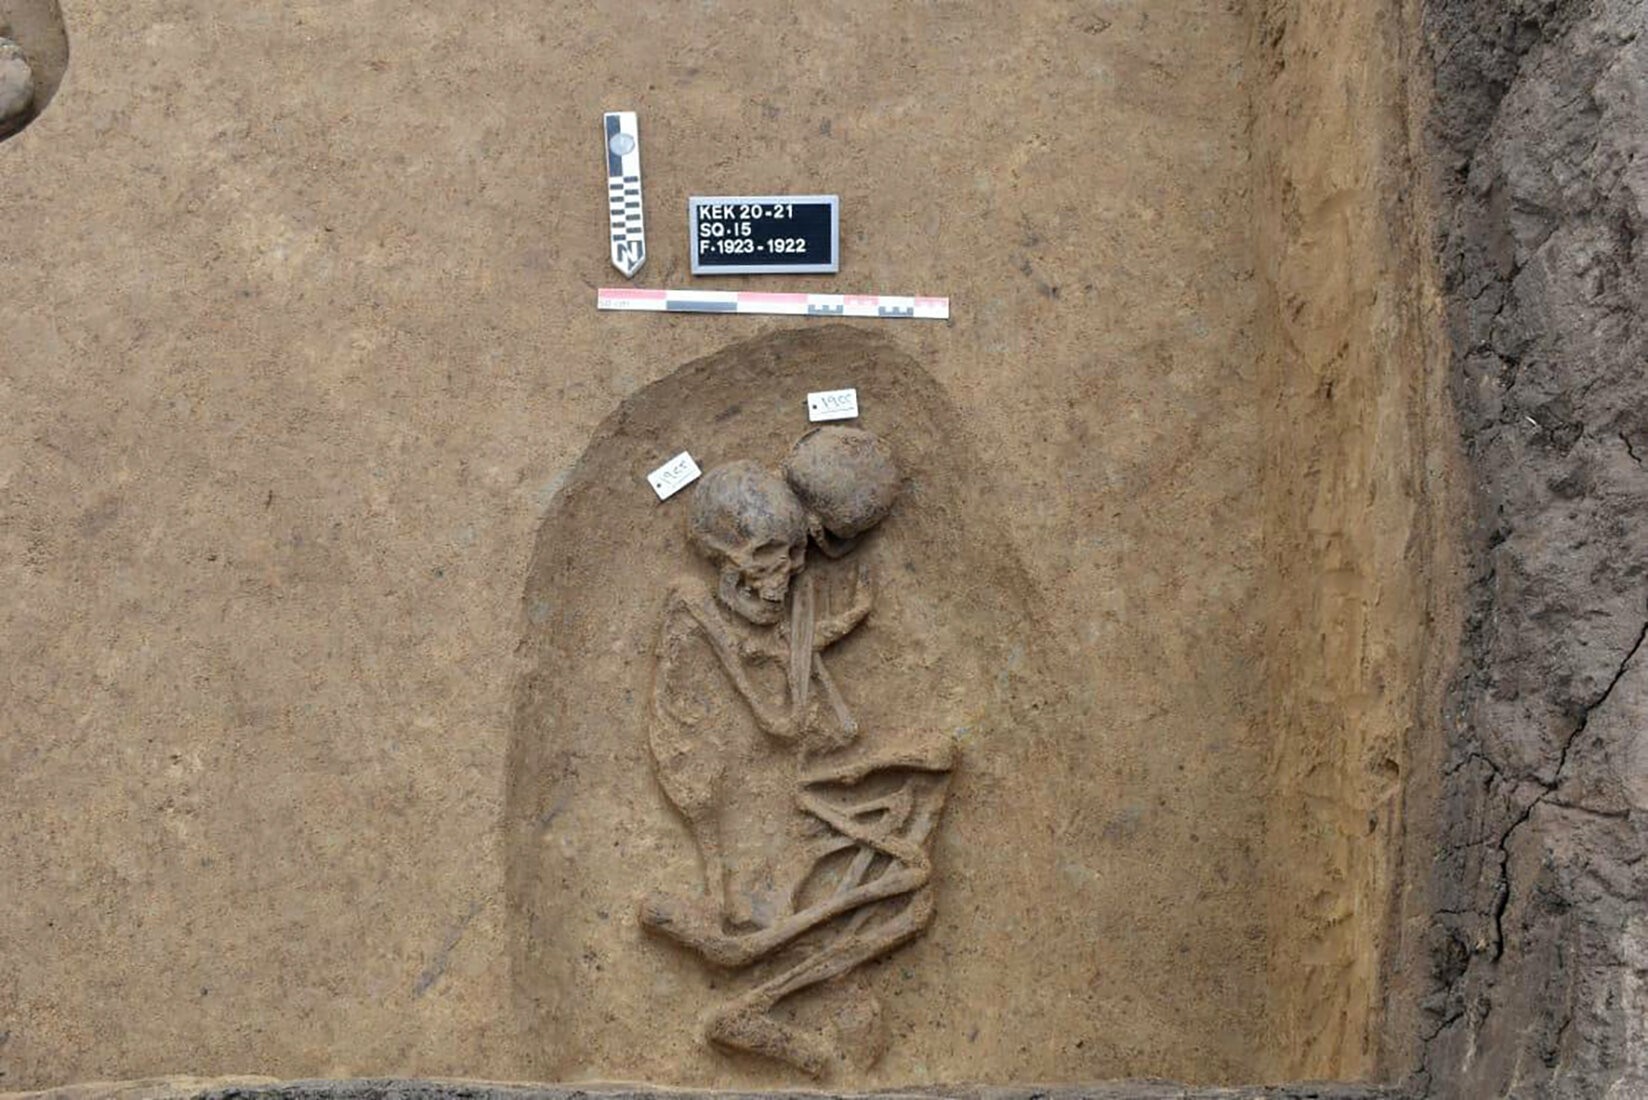 Esqueletos encontrados no sítio arqueológico Koum el-Khulgan, na província de Dakahlia, no Egito  (Foto: Ministério do Turismo e Antiguidades do Egito )